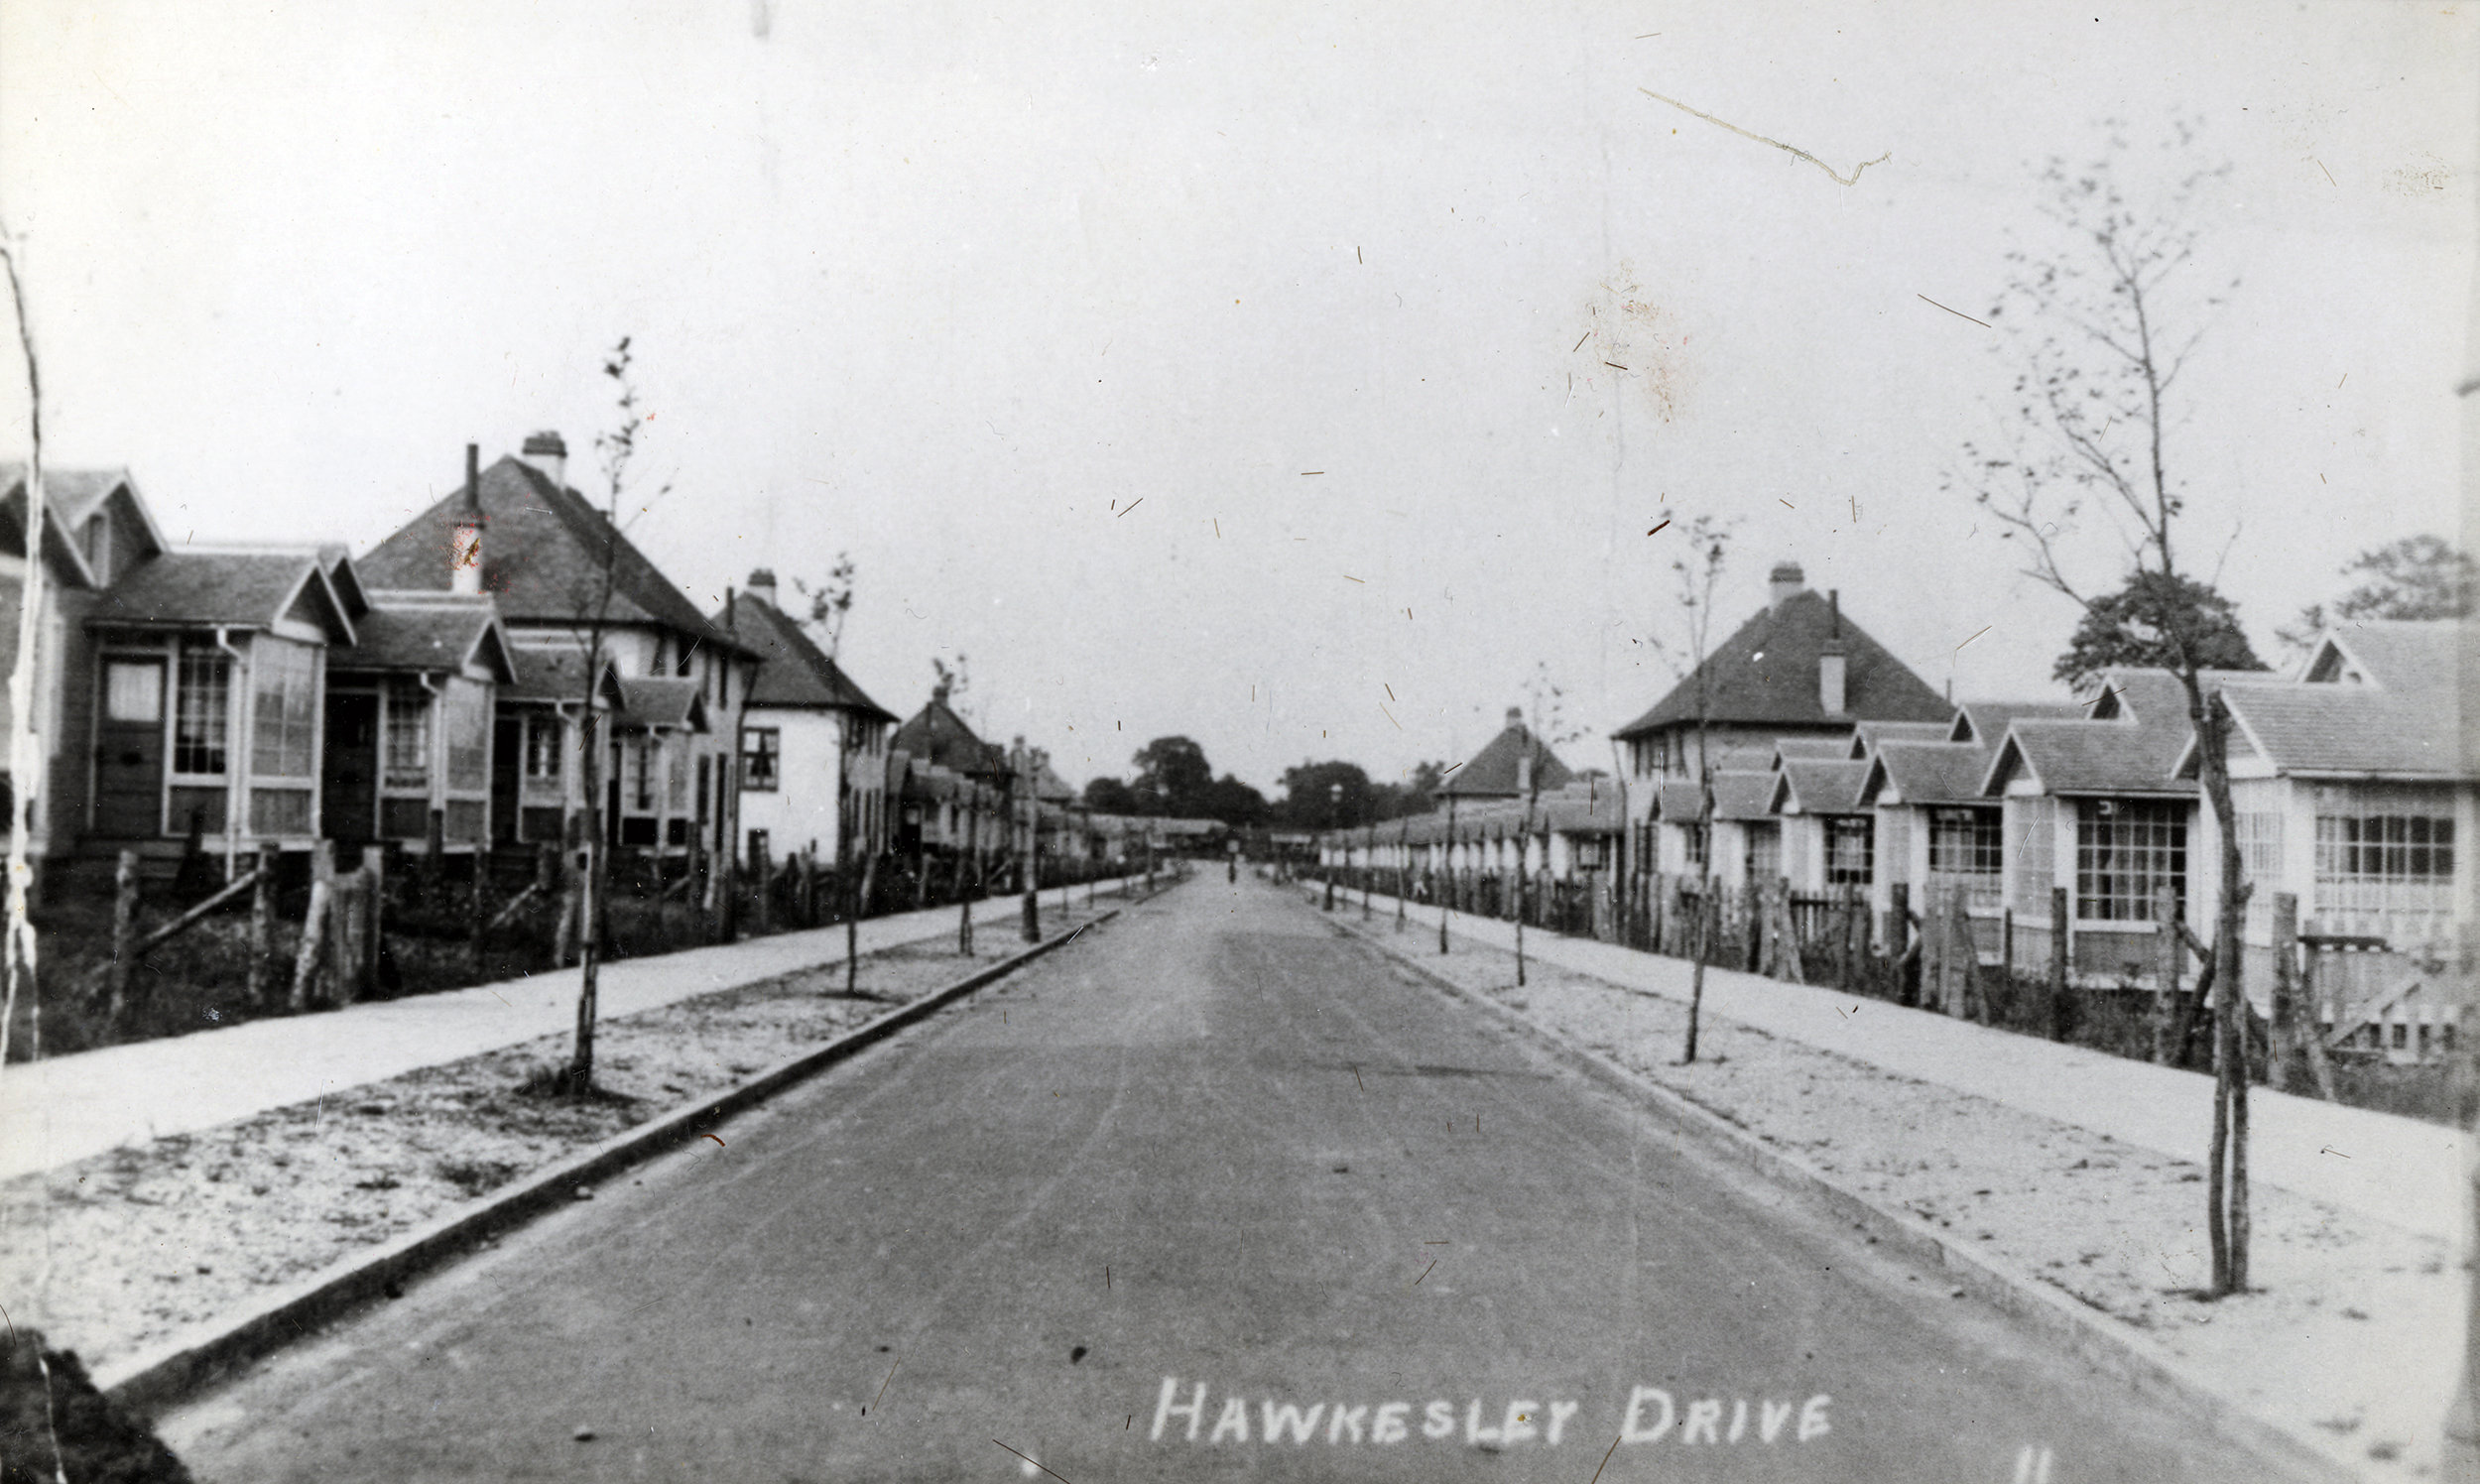  Hawkesley Drive, 1920's 